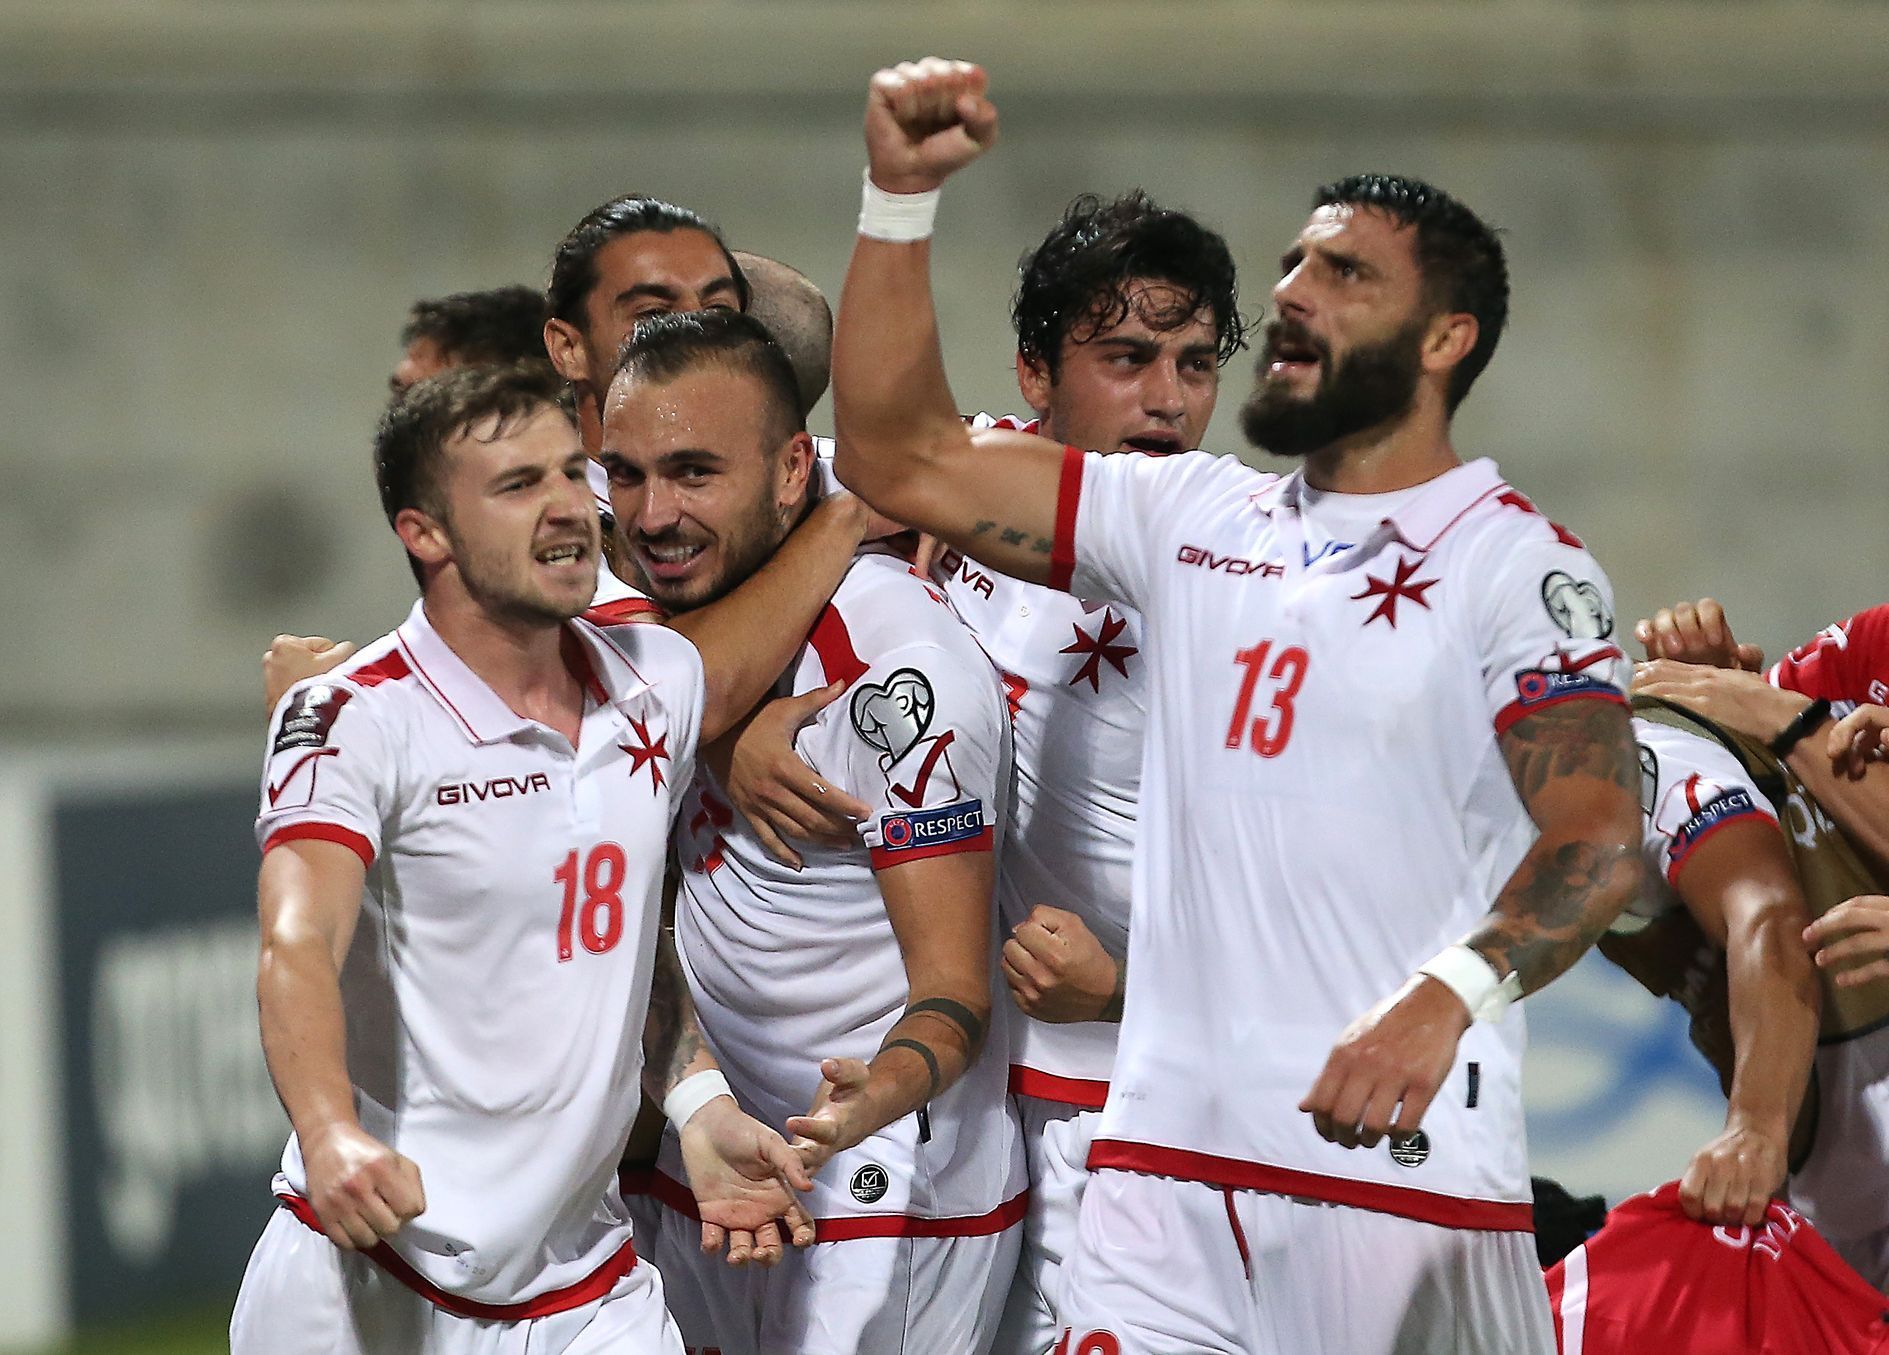 Fotbalisté Malty slaví vyrovnávací gól v kvalifikaci MS na Kypru